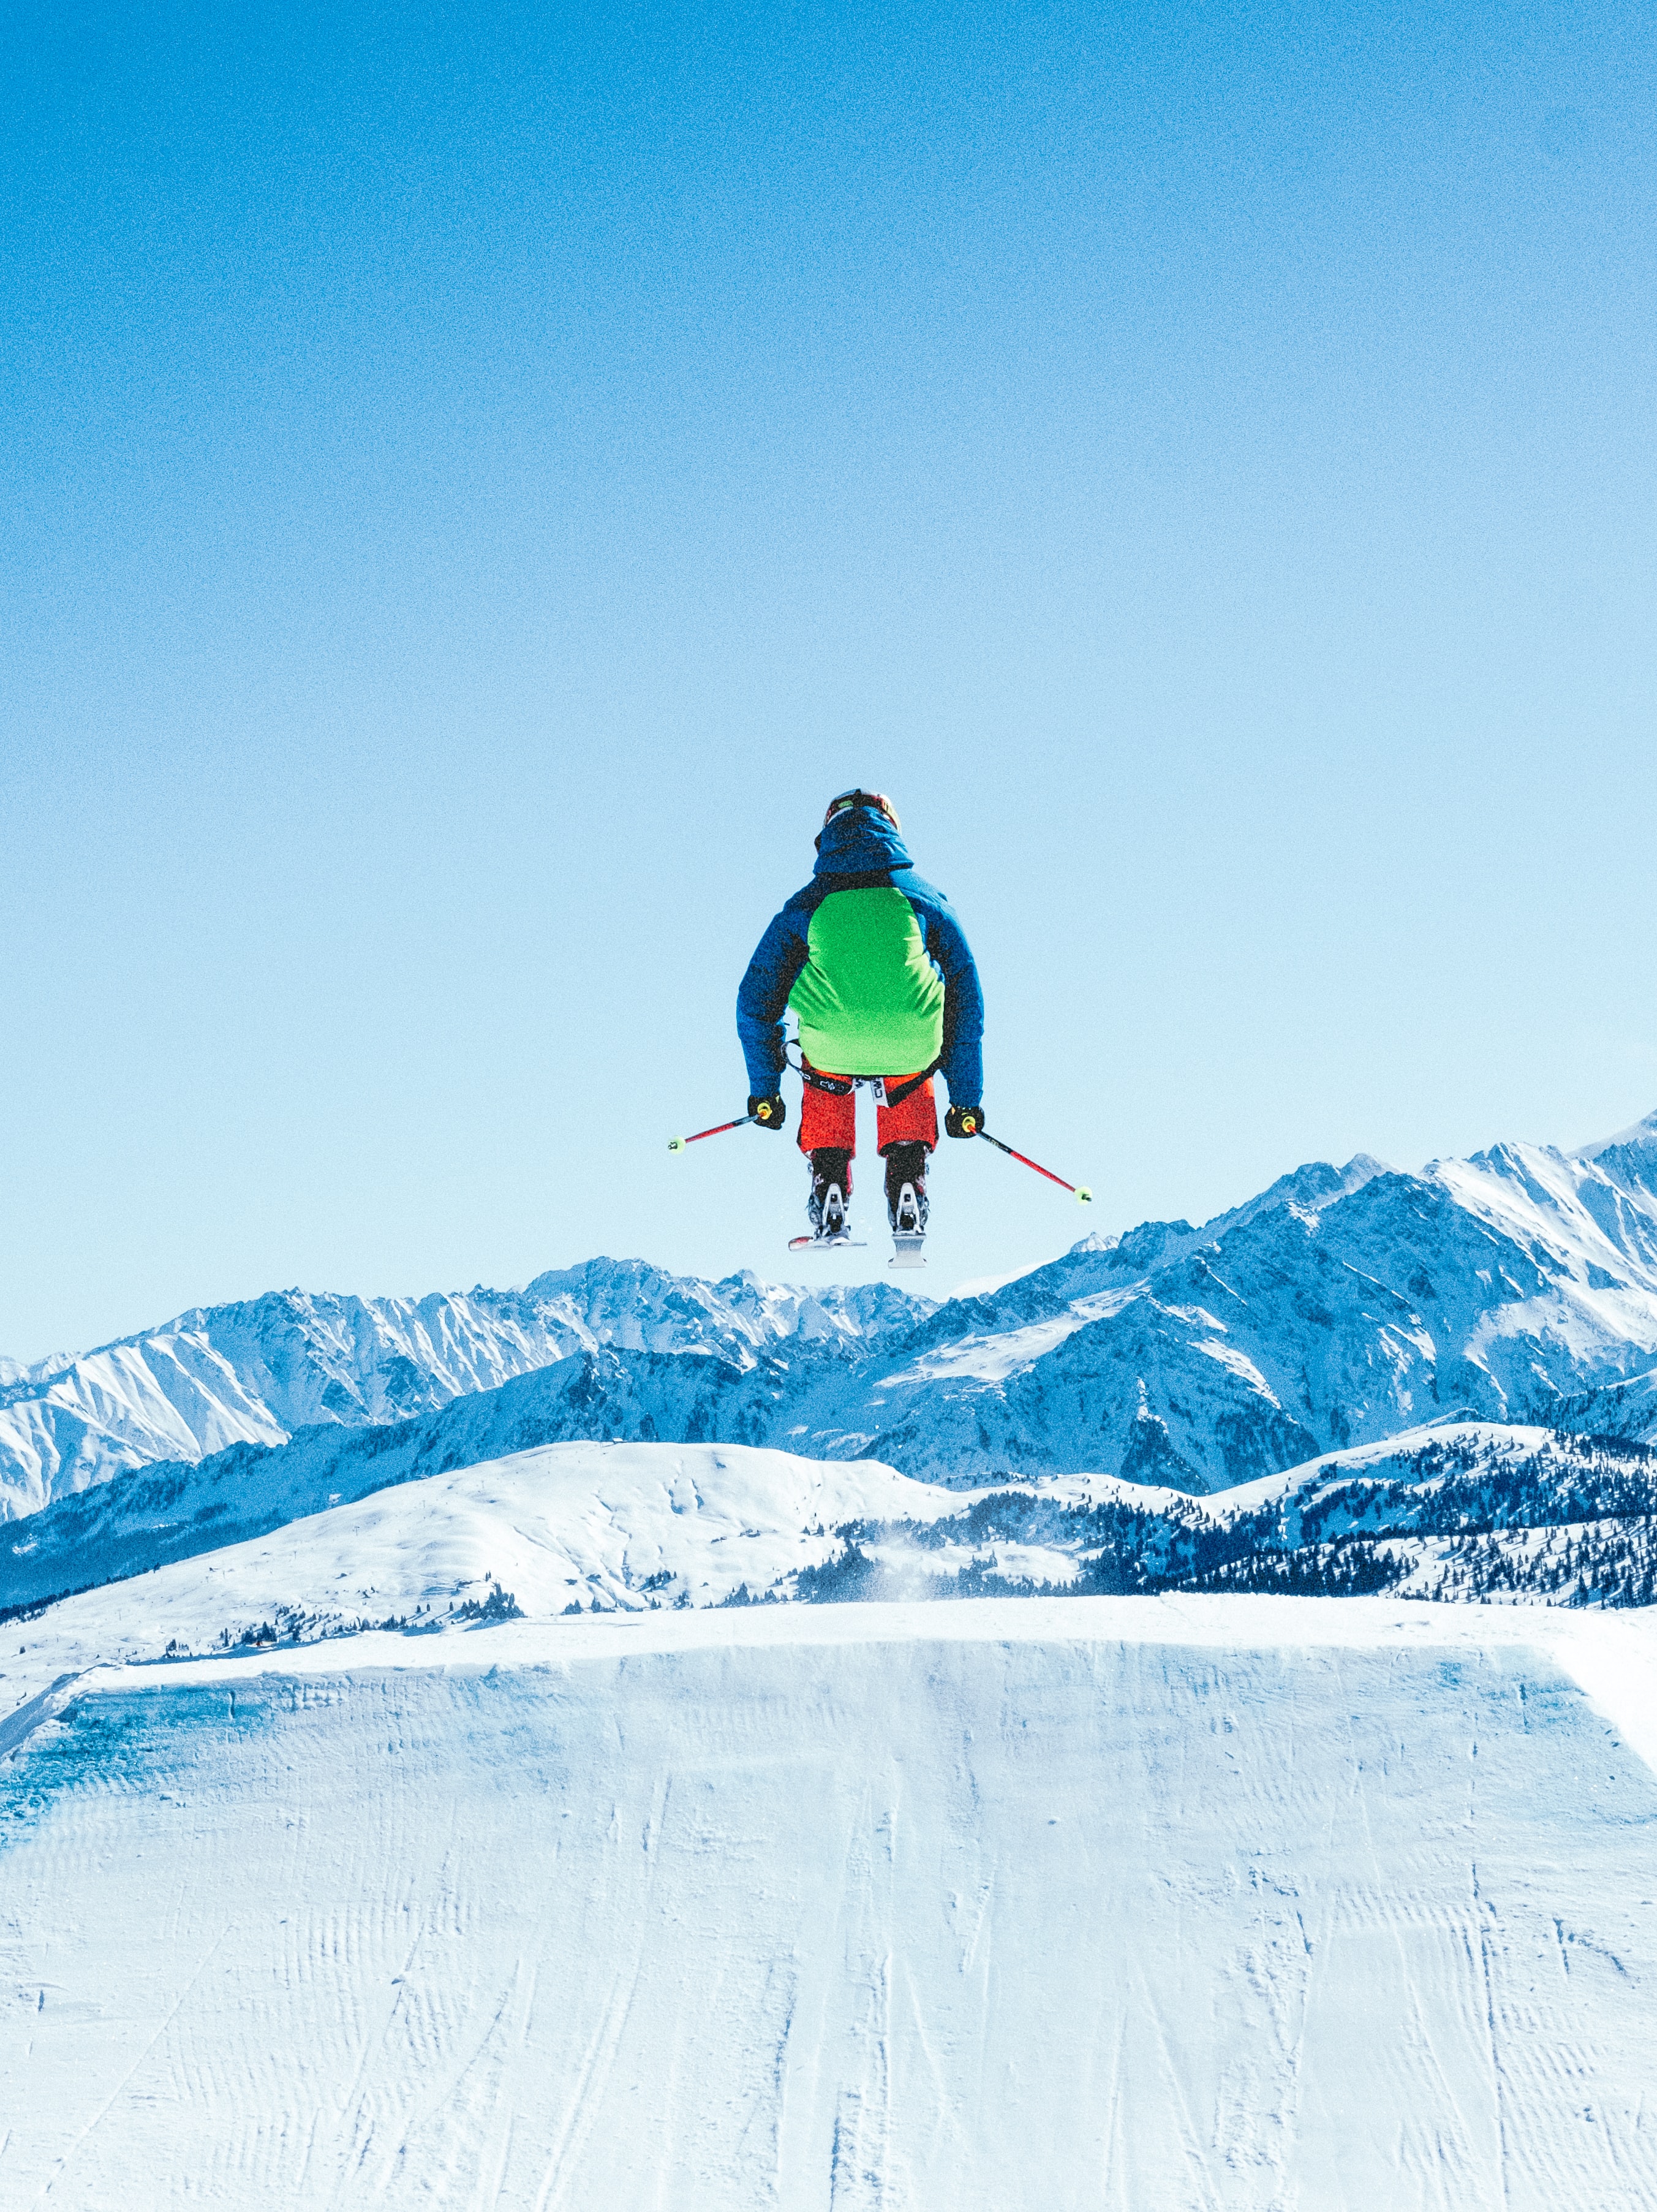 A ski jumper